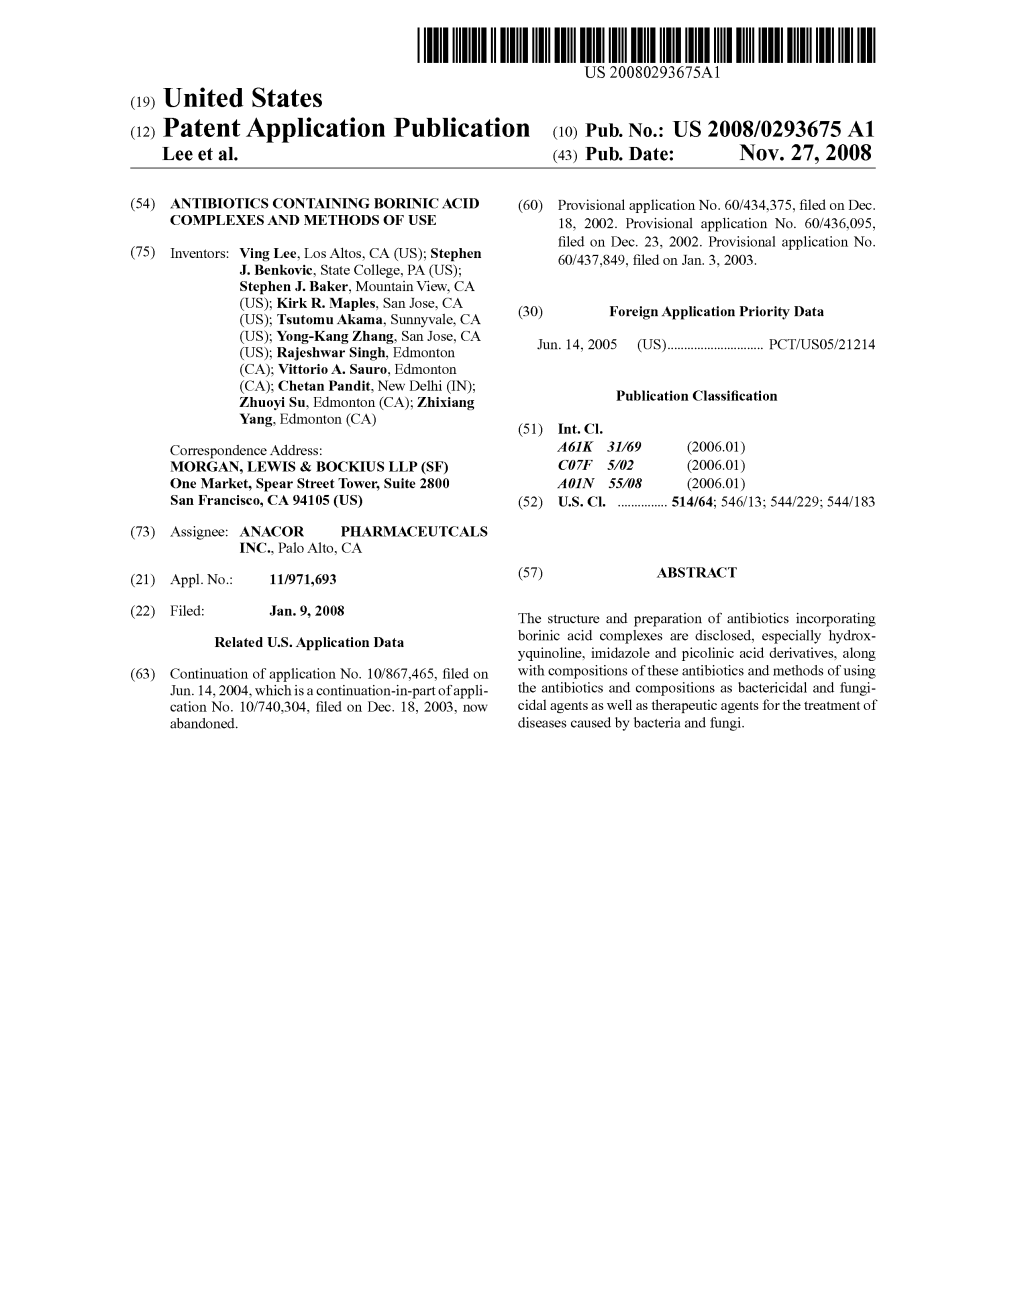 (12) Patent Application Publication (10) Pub. No.: US 2008/0293675 A1 Lee Et Al